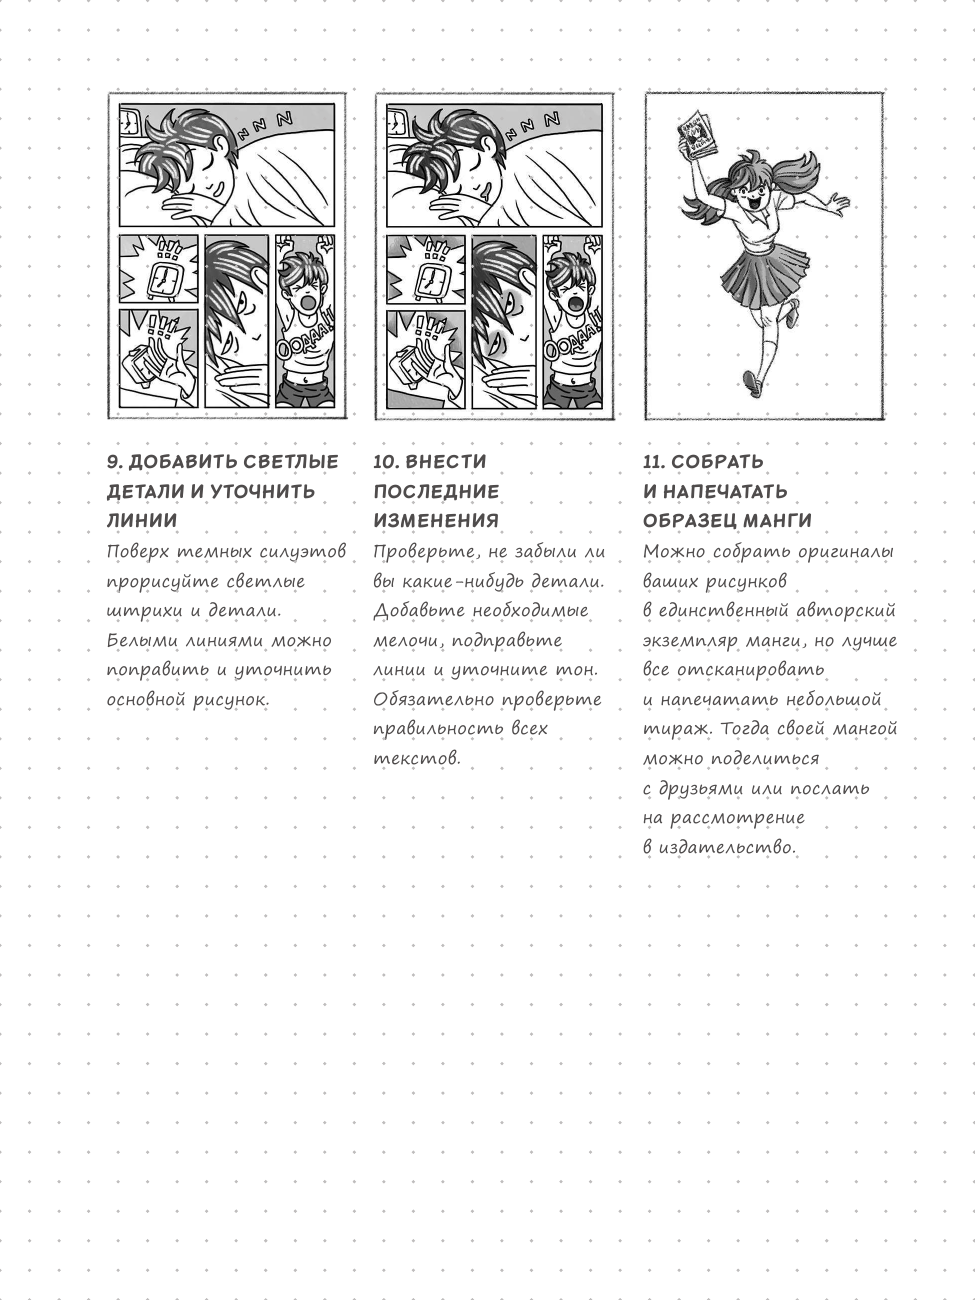 Sketchbook. Рисуем мангу и аниме - фото №13